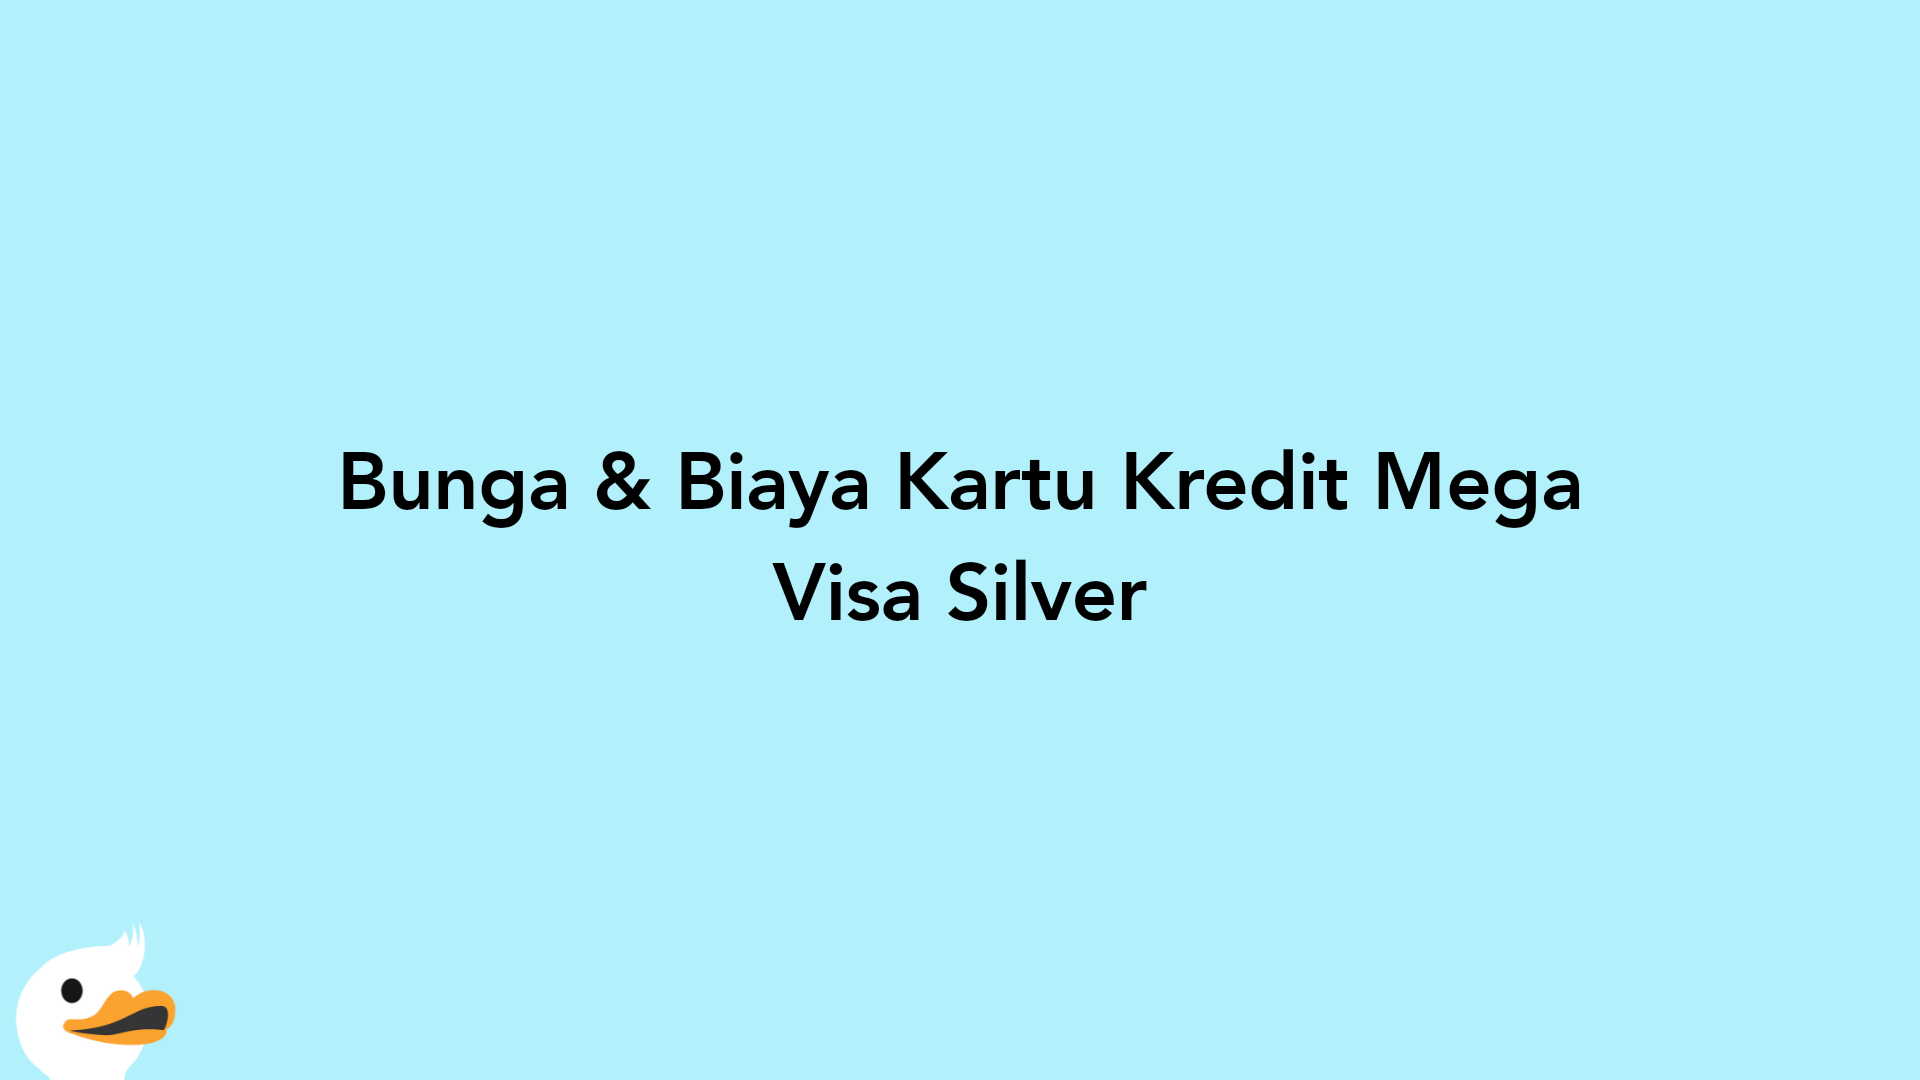 Bunga & Biaya Kartu Kredit Mega Visa Silver